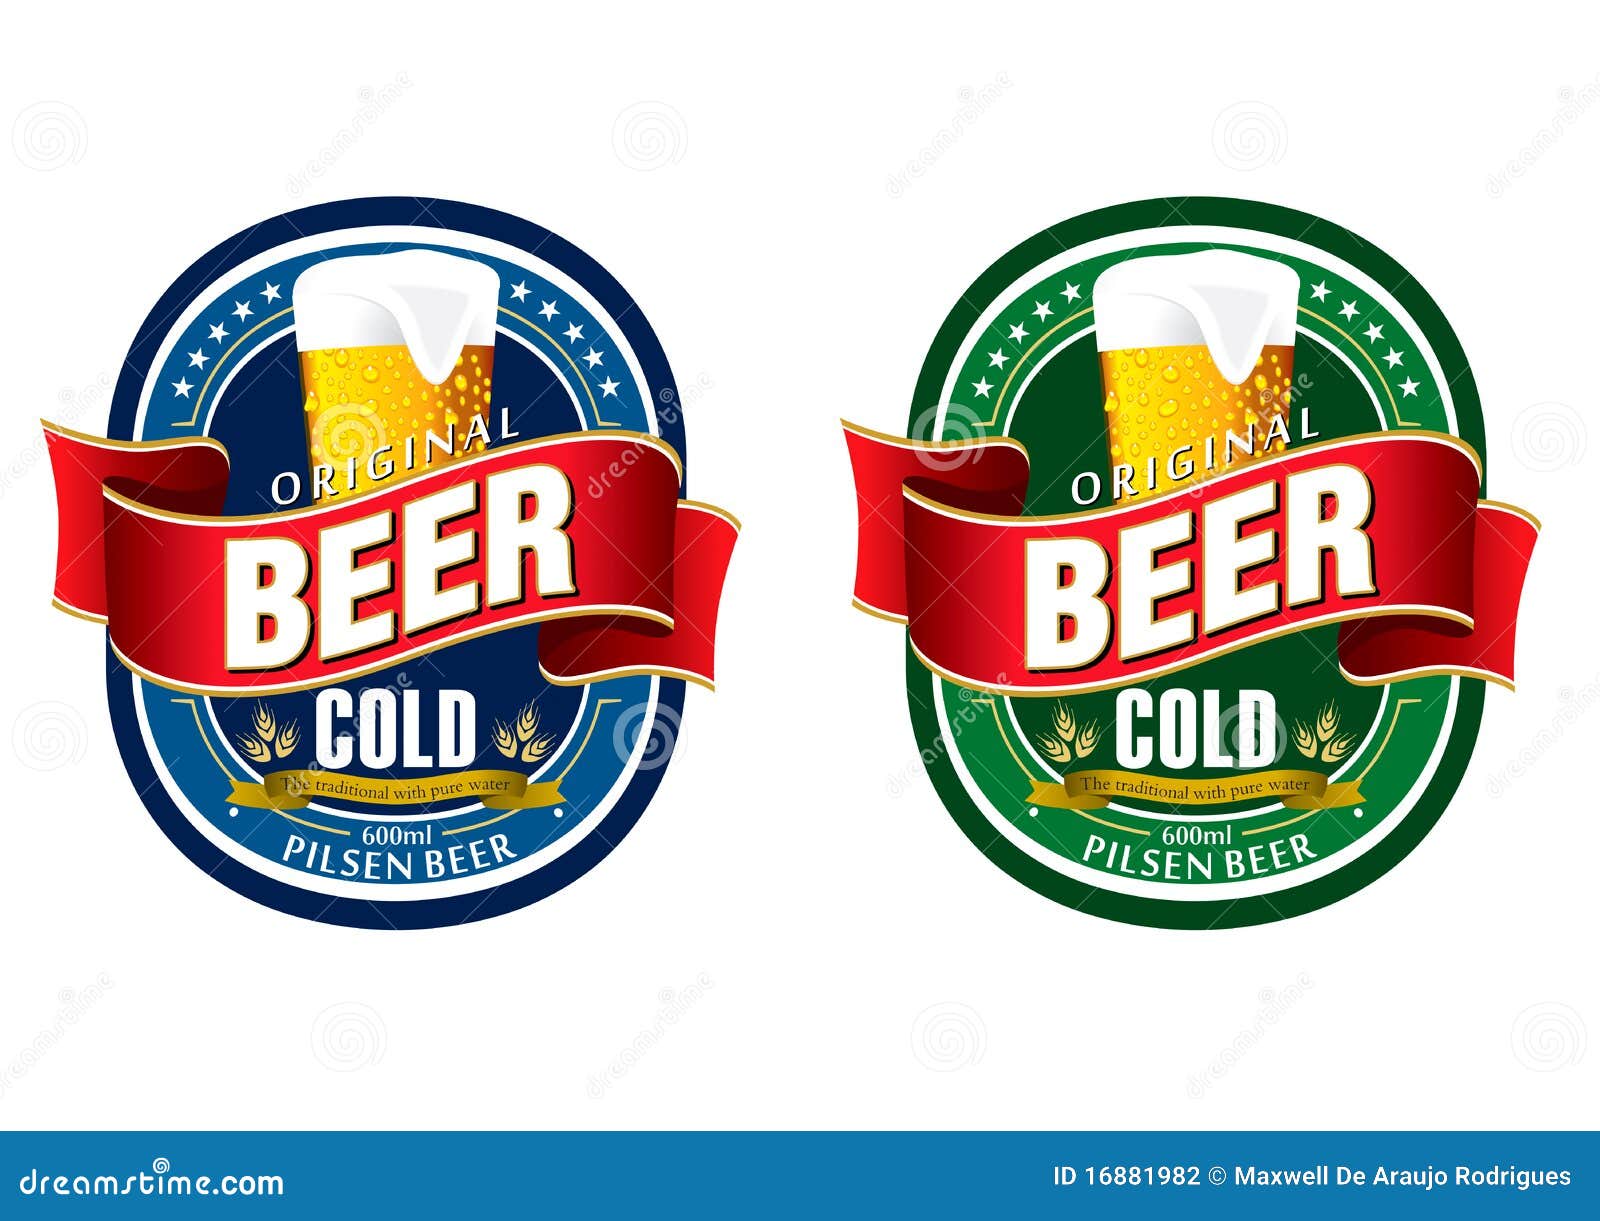 generic beer label logo